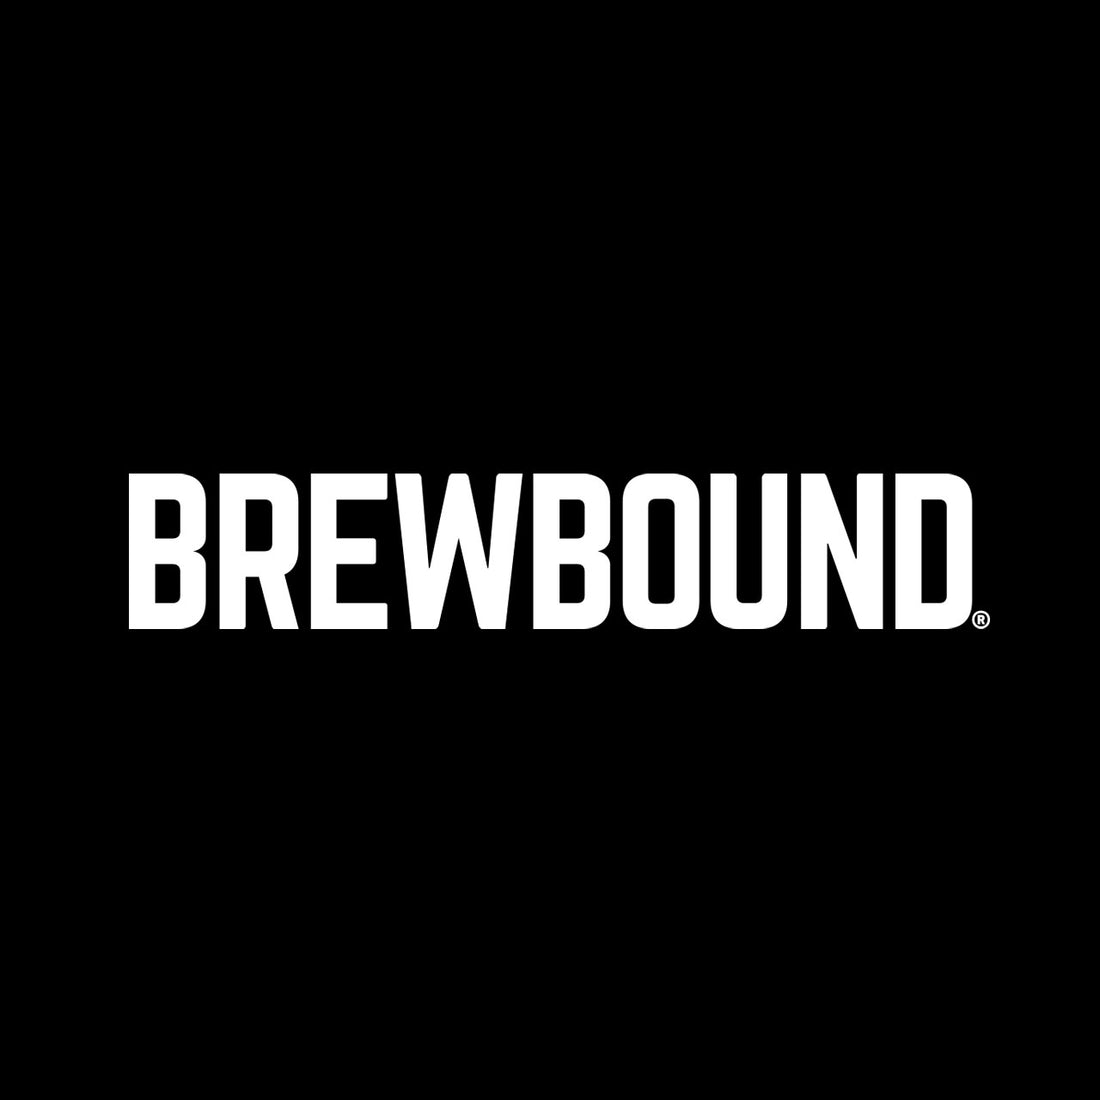 Brewbound